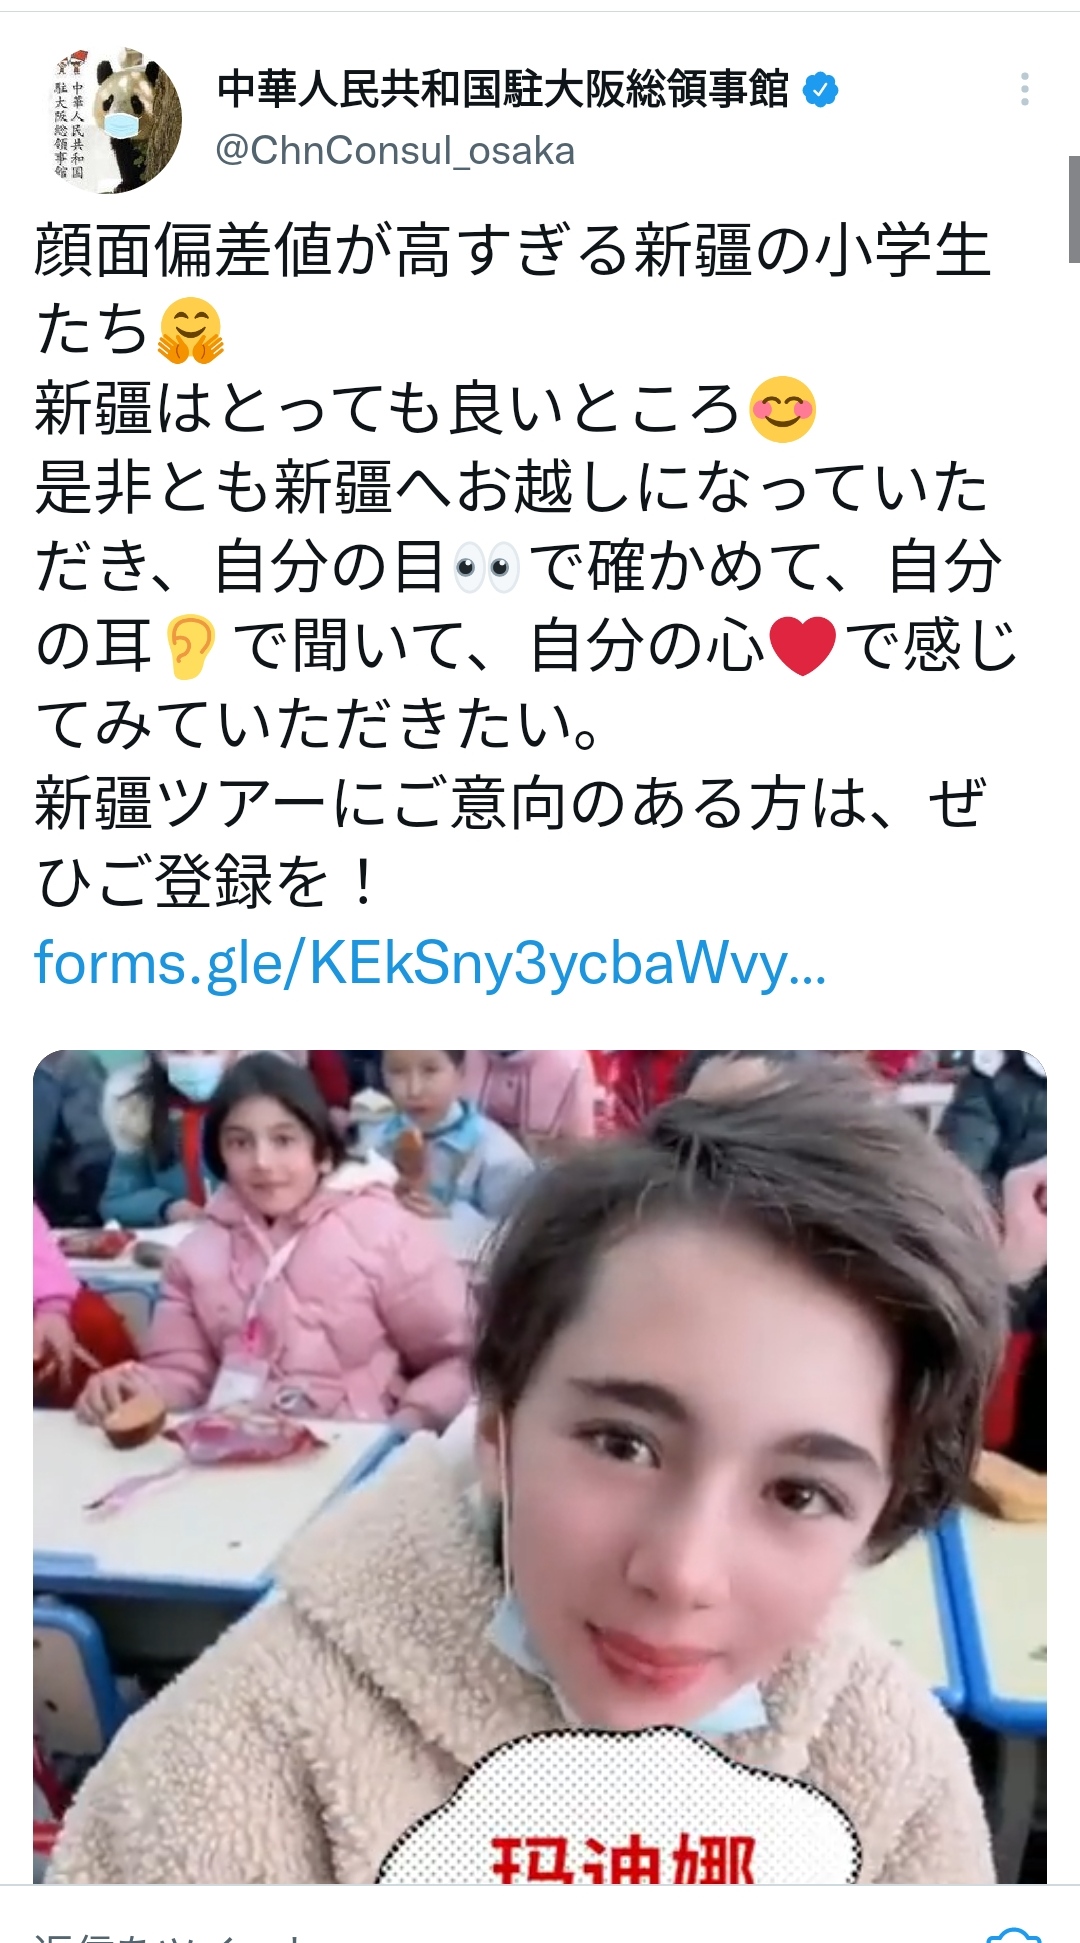 中国領事館(公式)「新疆の小学生は顔面偏差値が高いよ！とっても良いところ🤗」\n_1